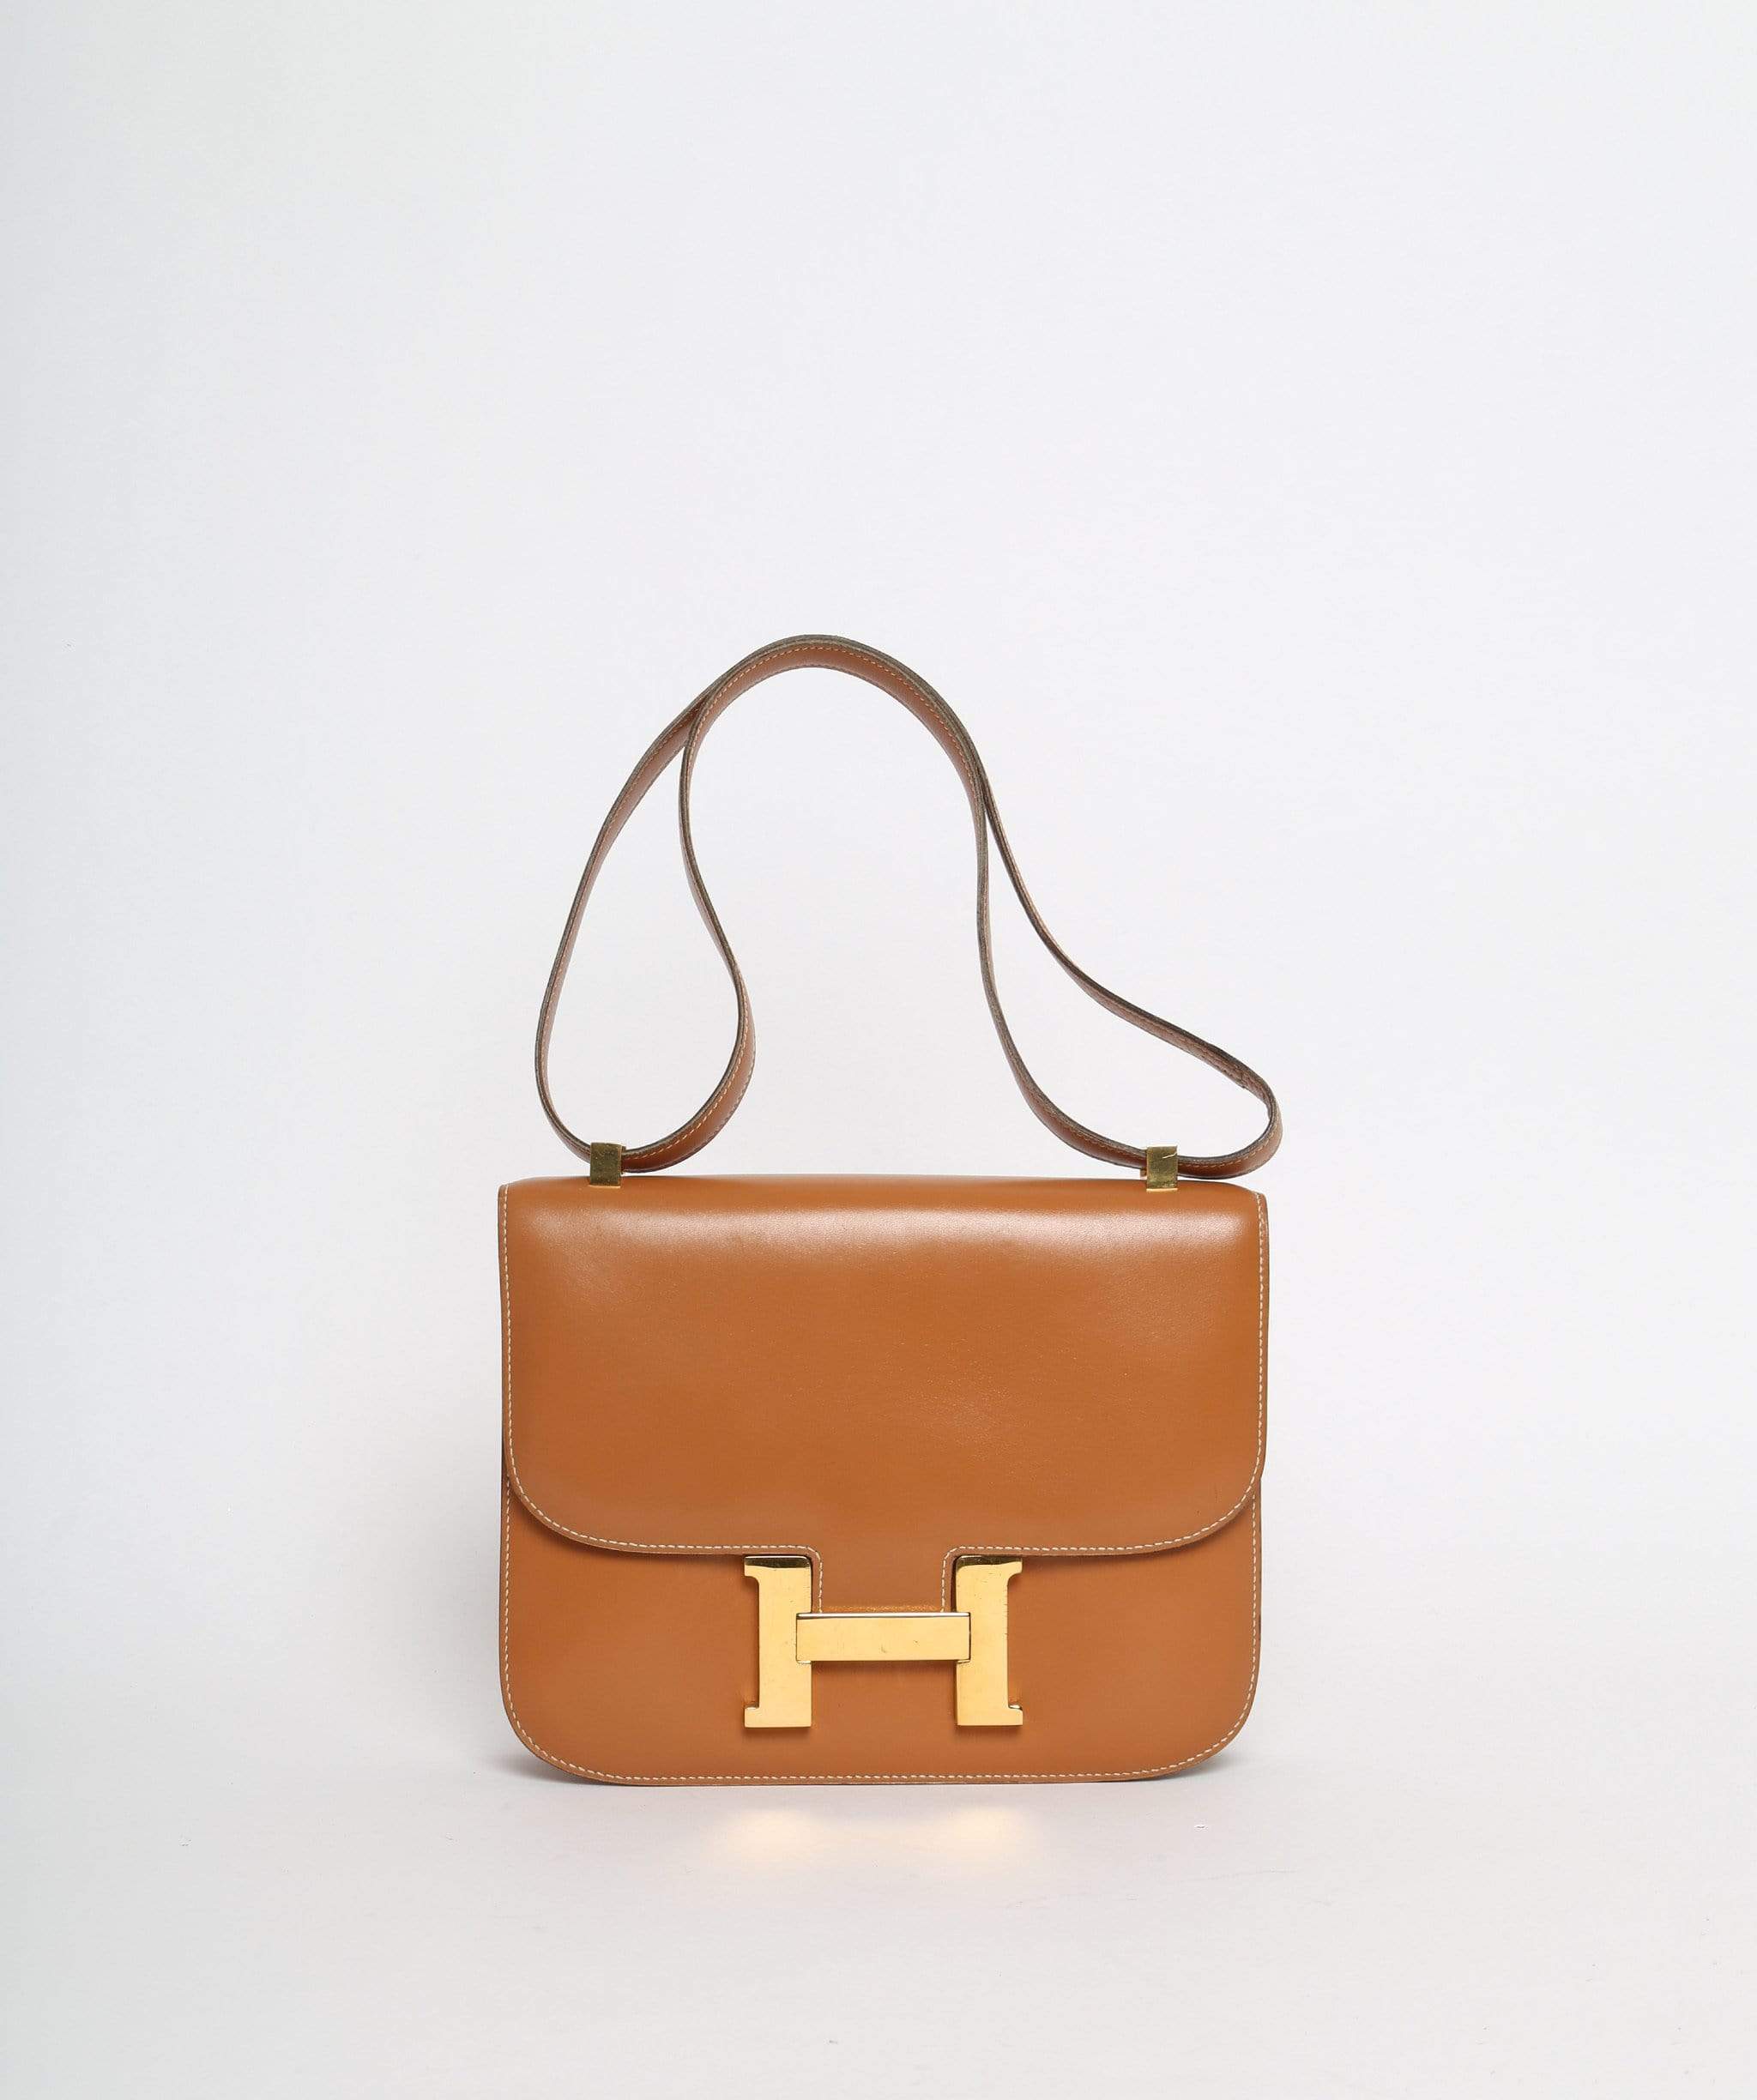 Hermès Hermès Constance 24 Gold color bag vintage with gold hardware